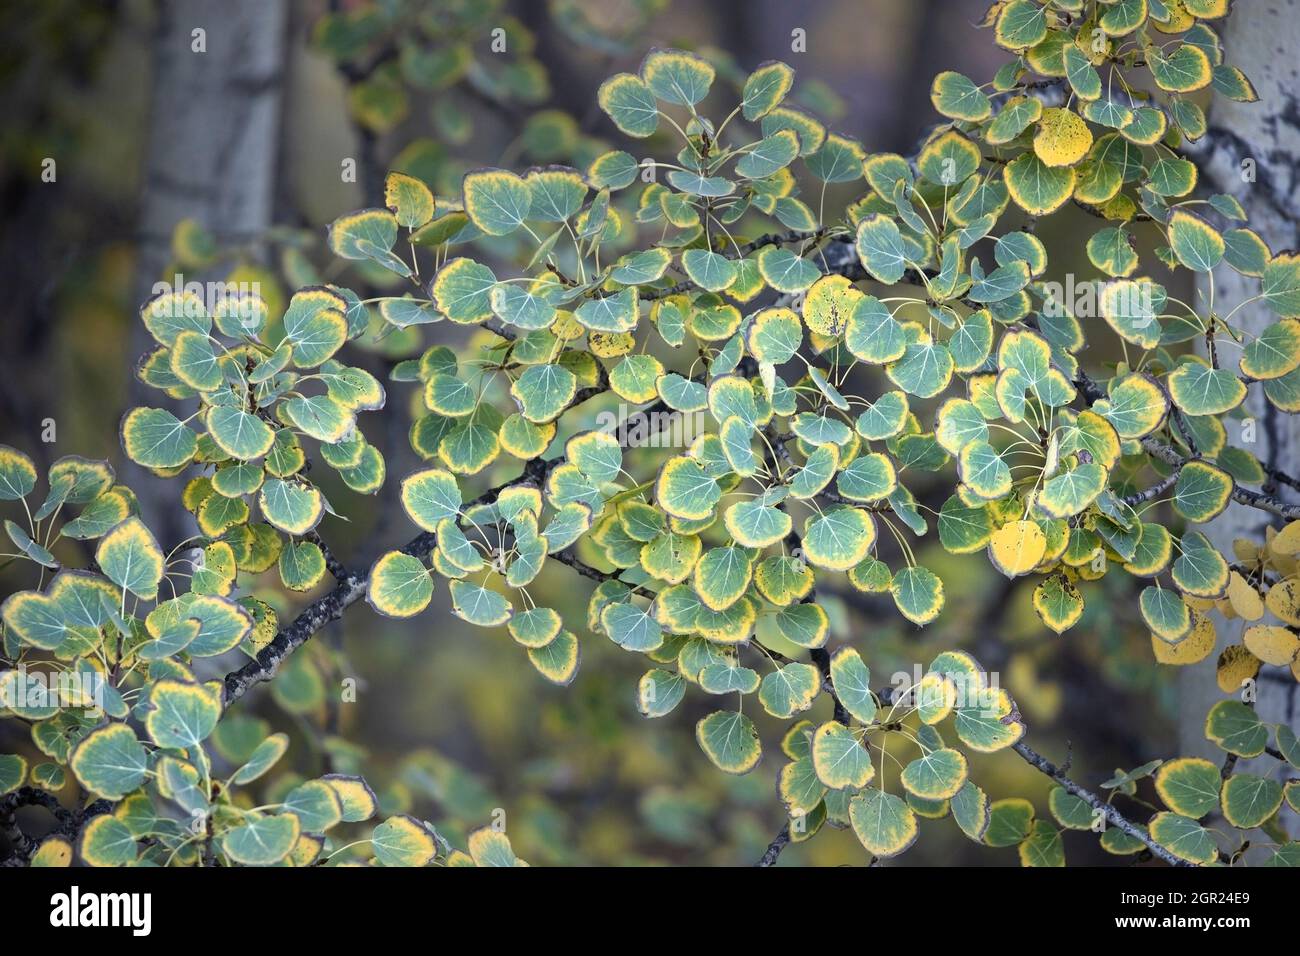 Les feuilles d'un Aspen qui tremble changent de couleur verte à jaune en automne en raison d'une diminution de la photosynthèse. Populus tremuloides. Banque D'Images